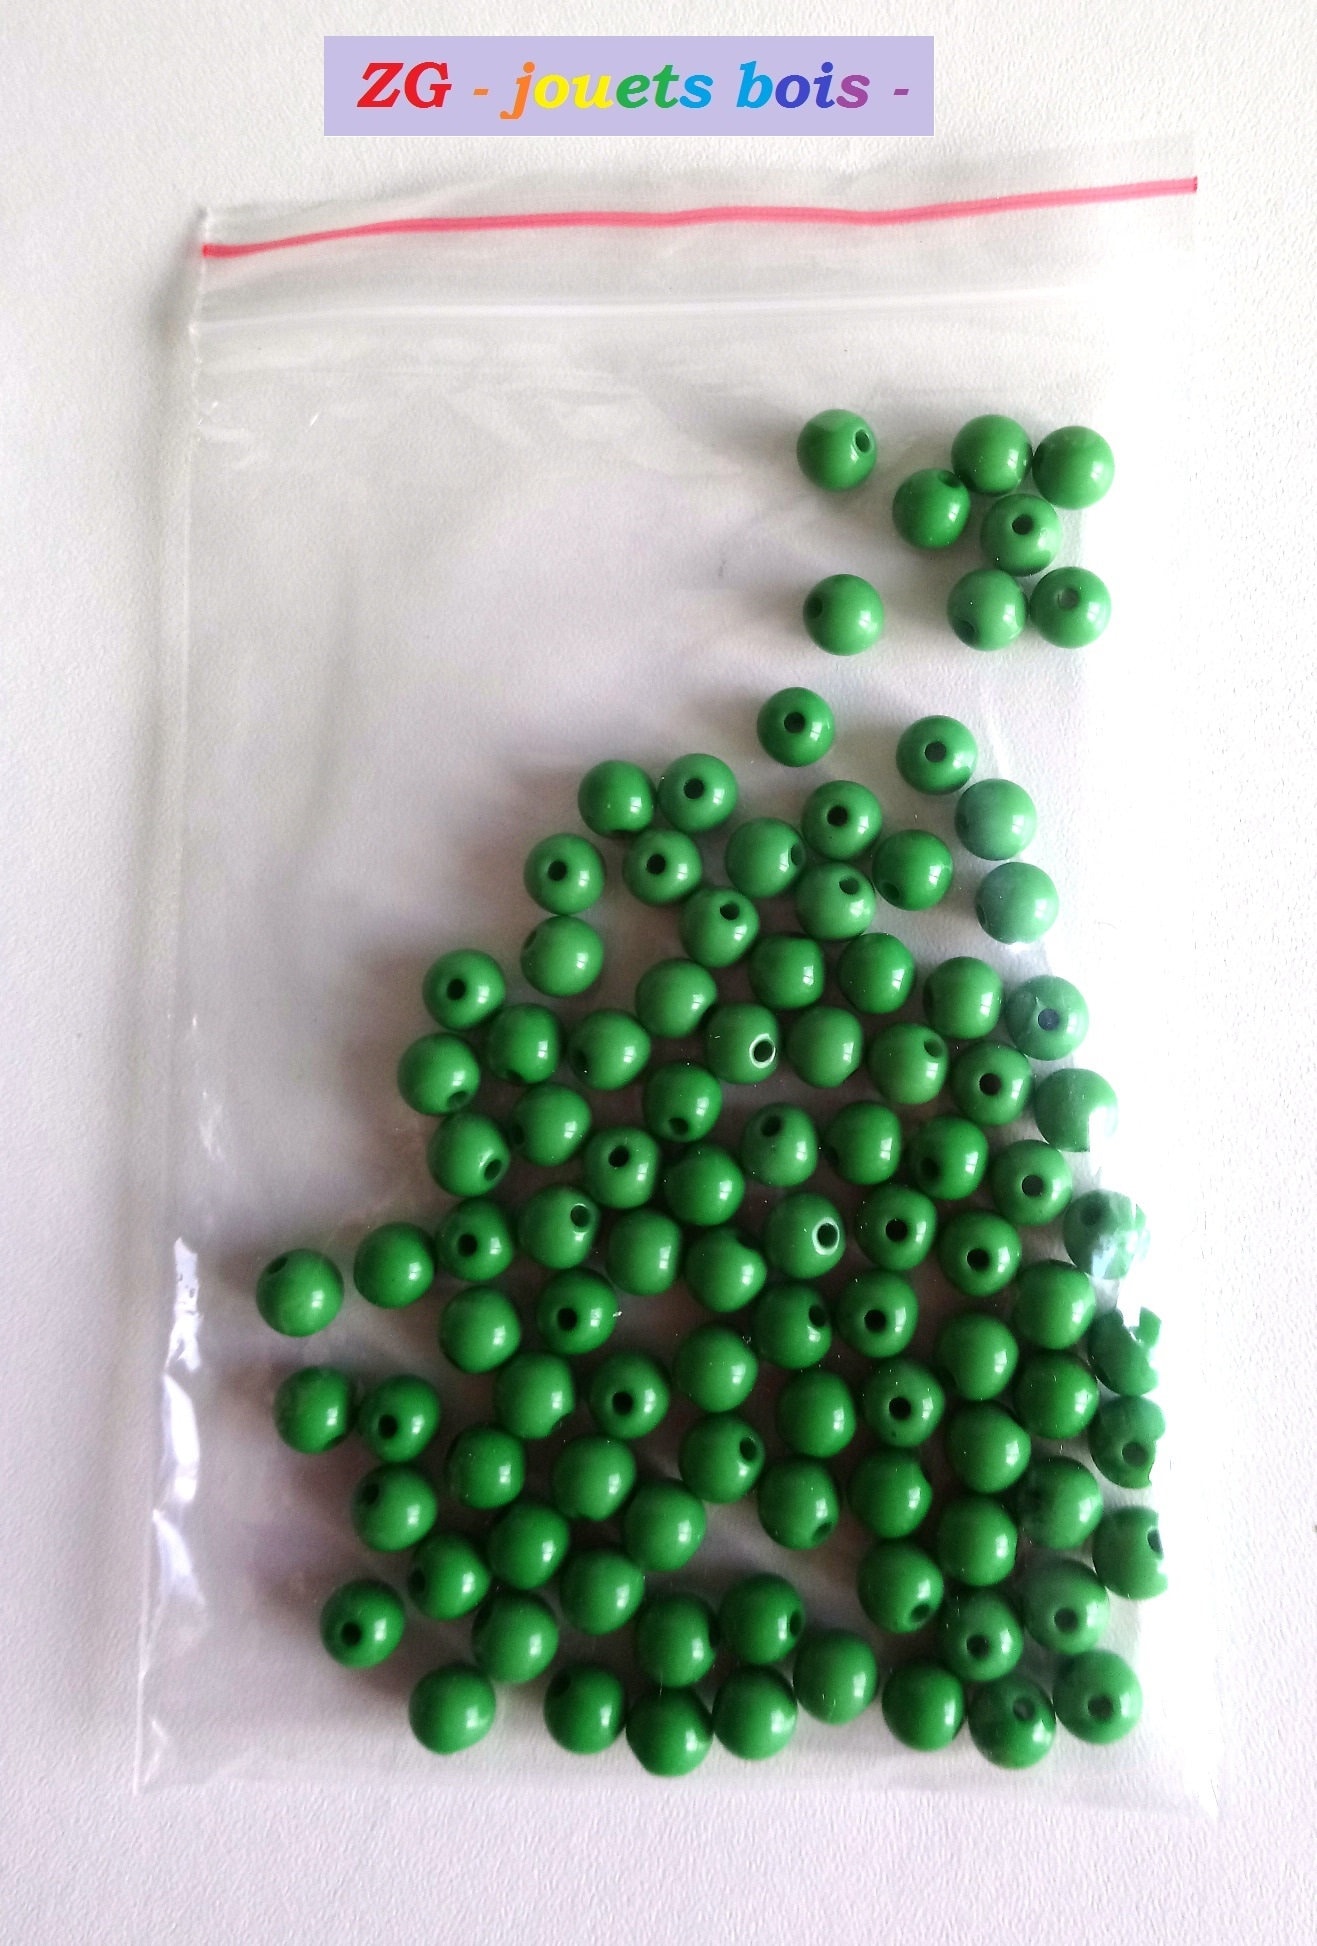 100 perles Montessori 8 mm